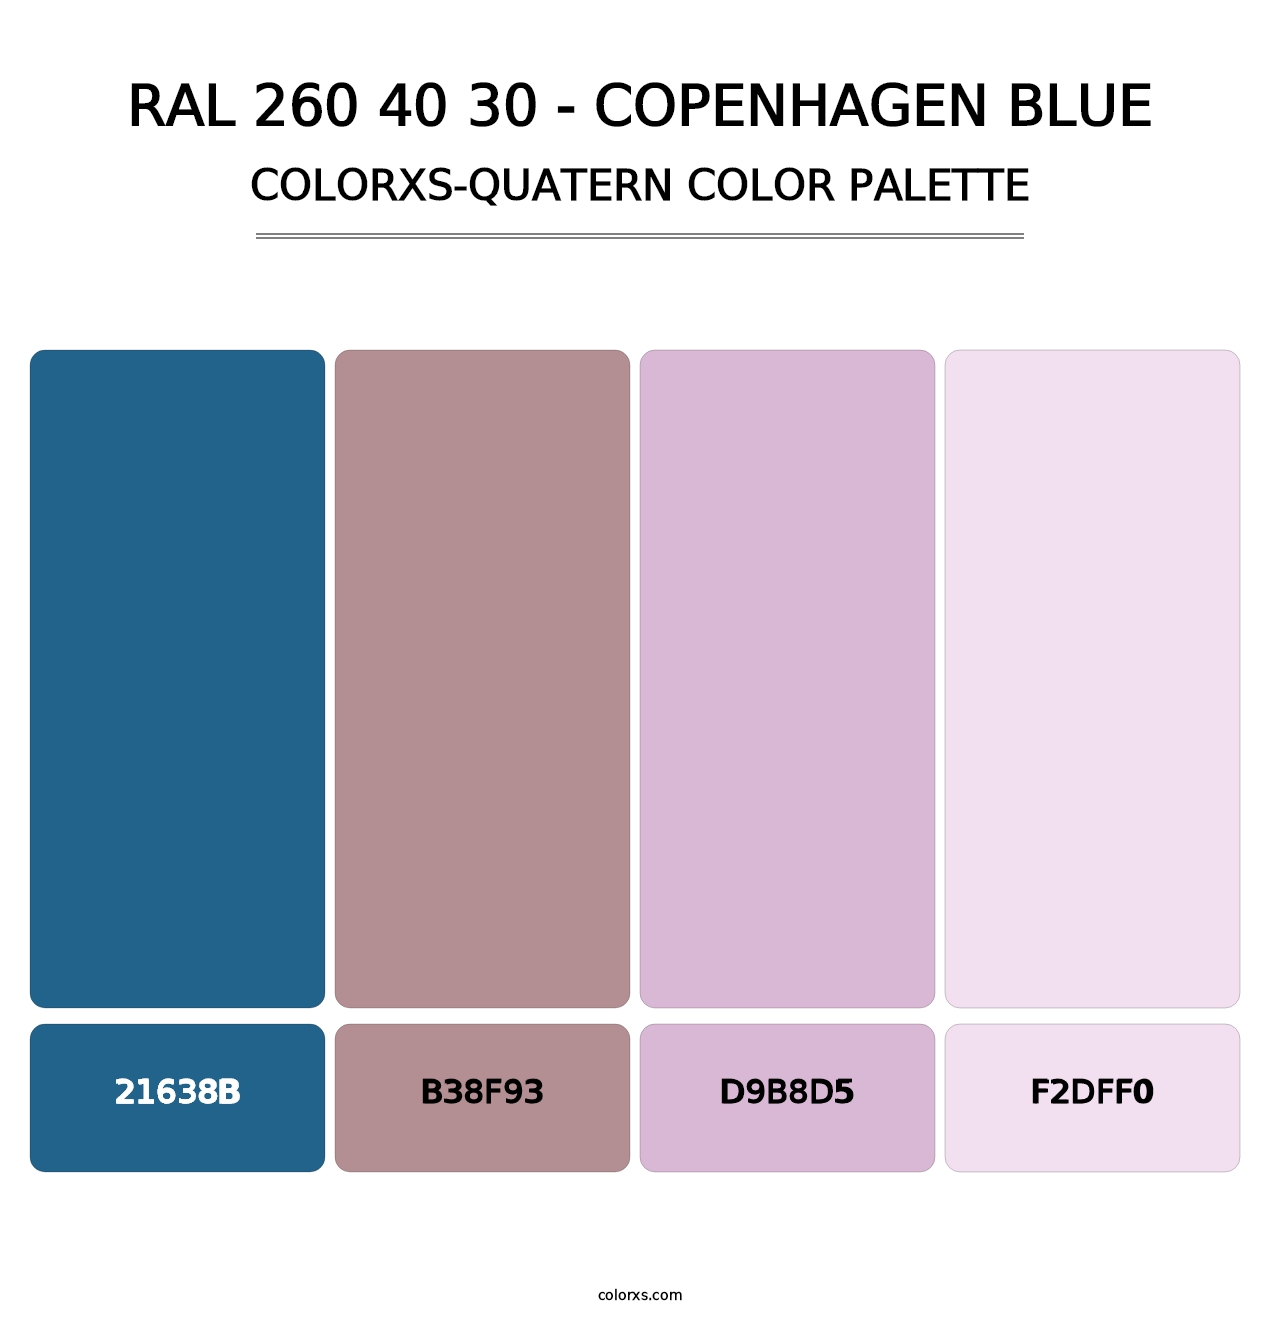 RAL 260 40 30 - Copenhagen Blue - Colorxs Quatern Palette